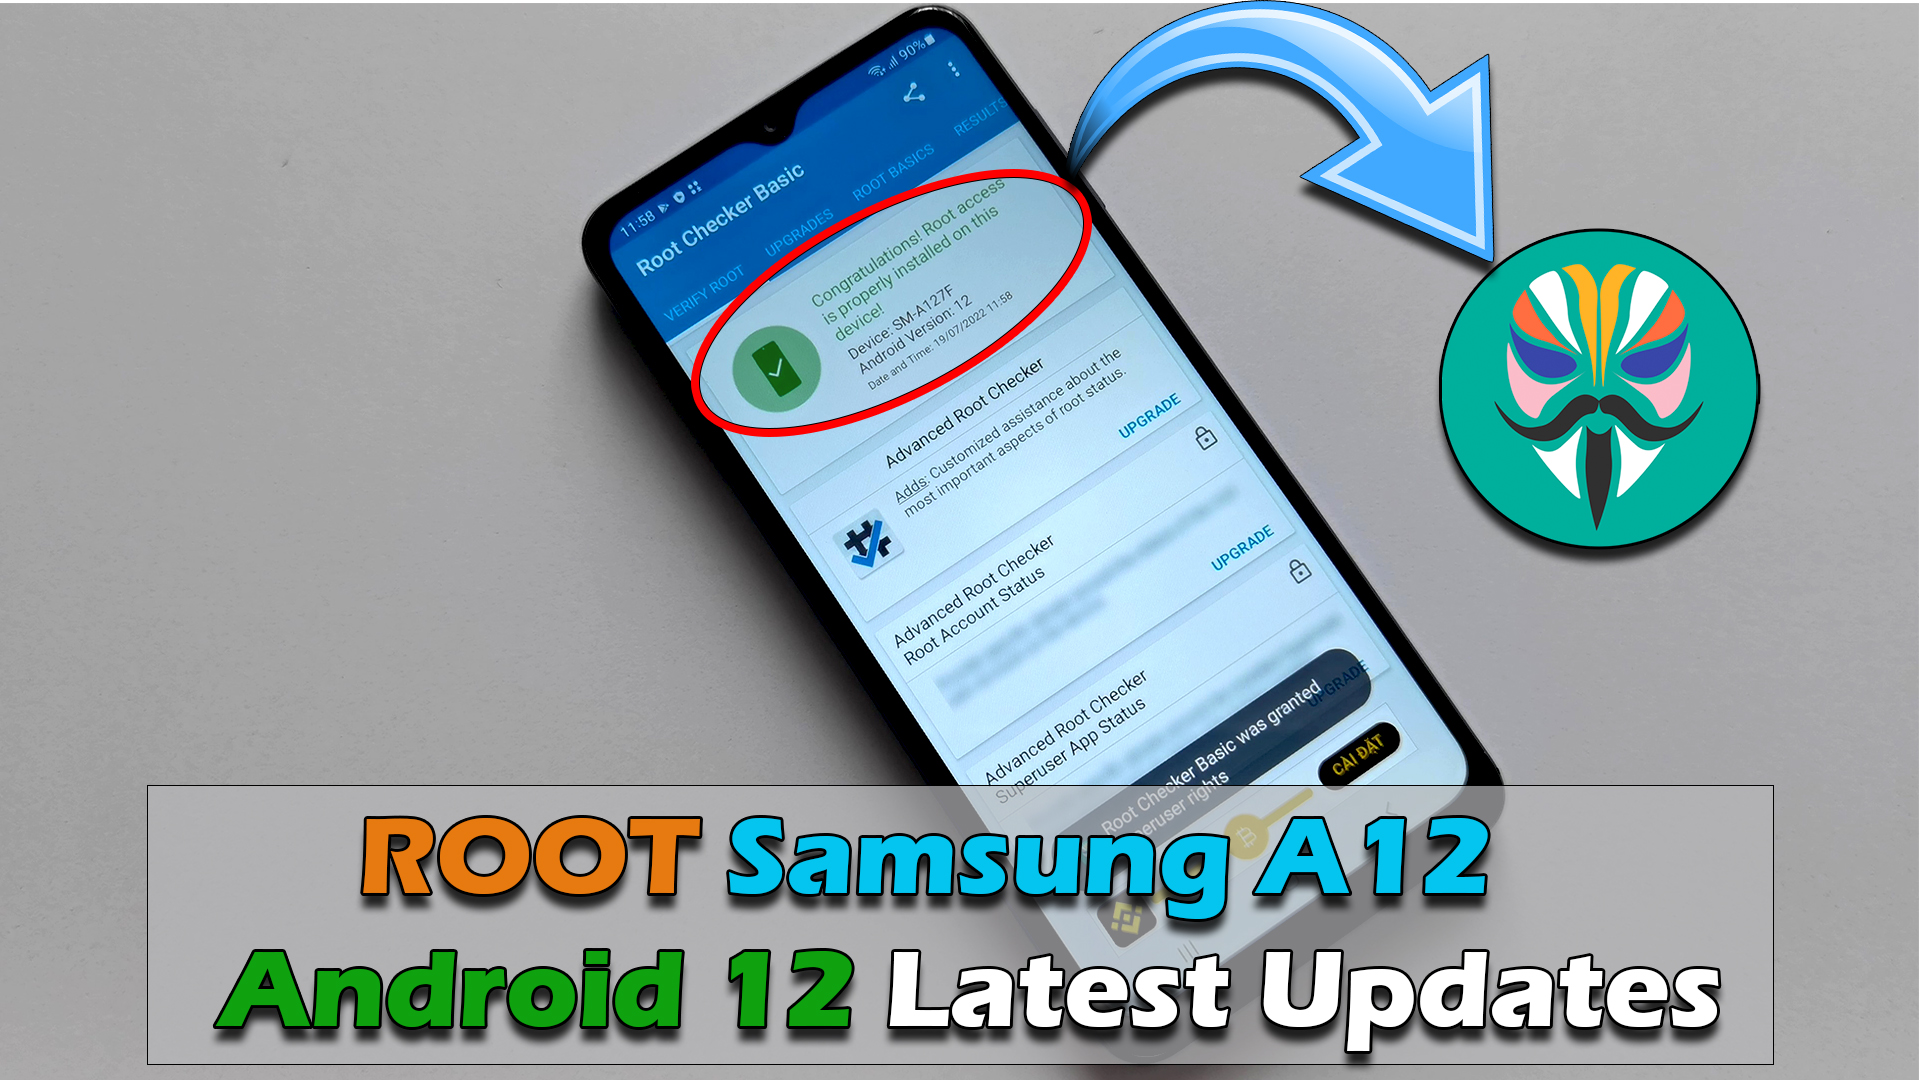 ROOT Samsung Galaxy A12 Android 12 Latest Updates để trải nghiệm tất cả các tính năng mới nhất của hệ điều hành. Bạn có thể tuỳ chỉnh và thay đổi được nhiều thứ hơn khi root điện thoại của mình.